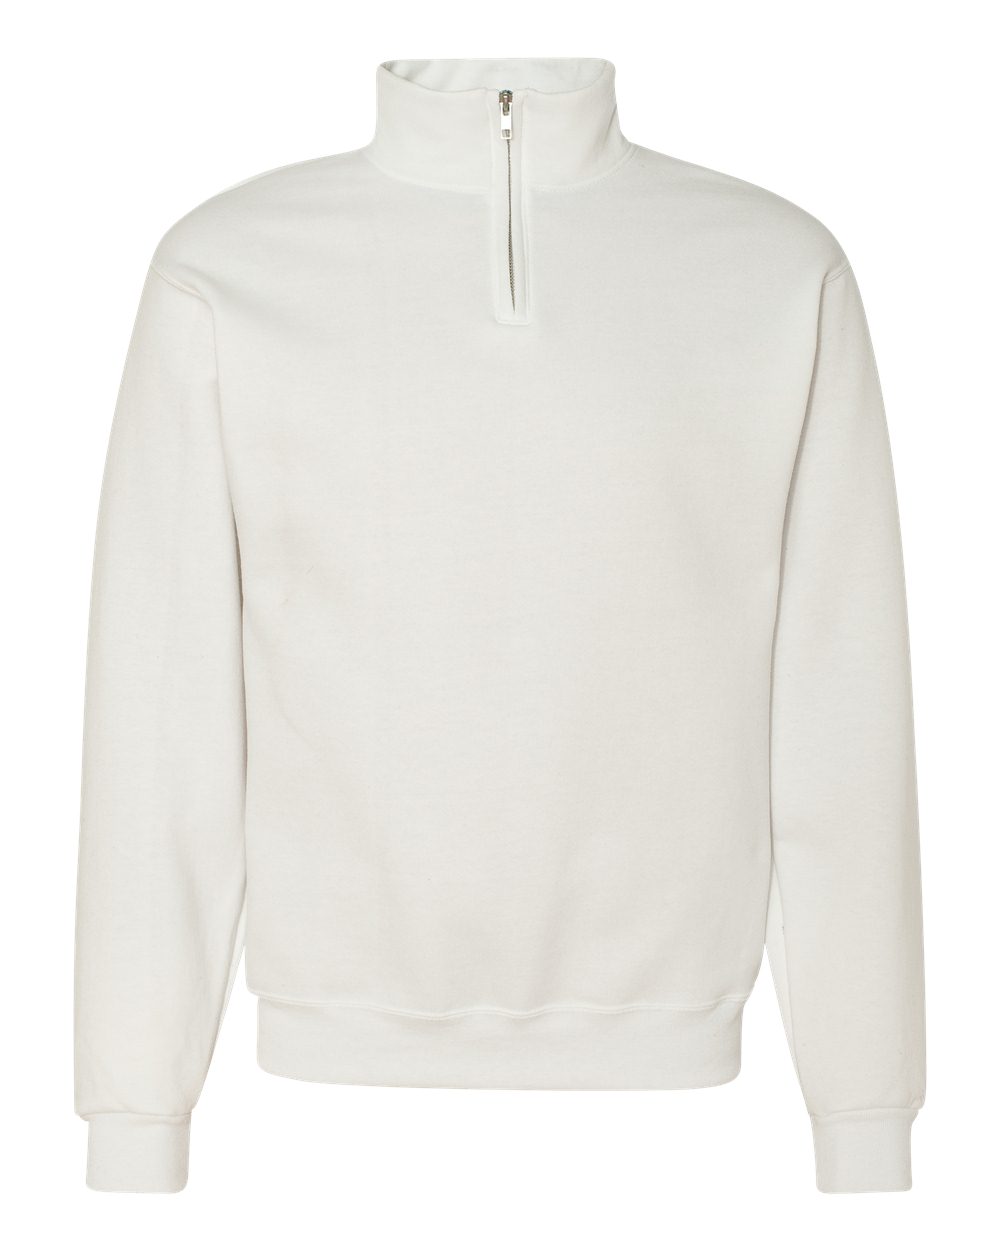 JERZEES 1/4-Zip Sweatshirt with Cadet Collar & Your Brand Logo